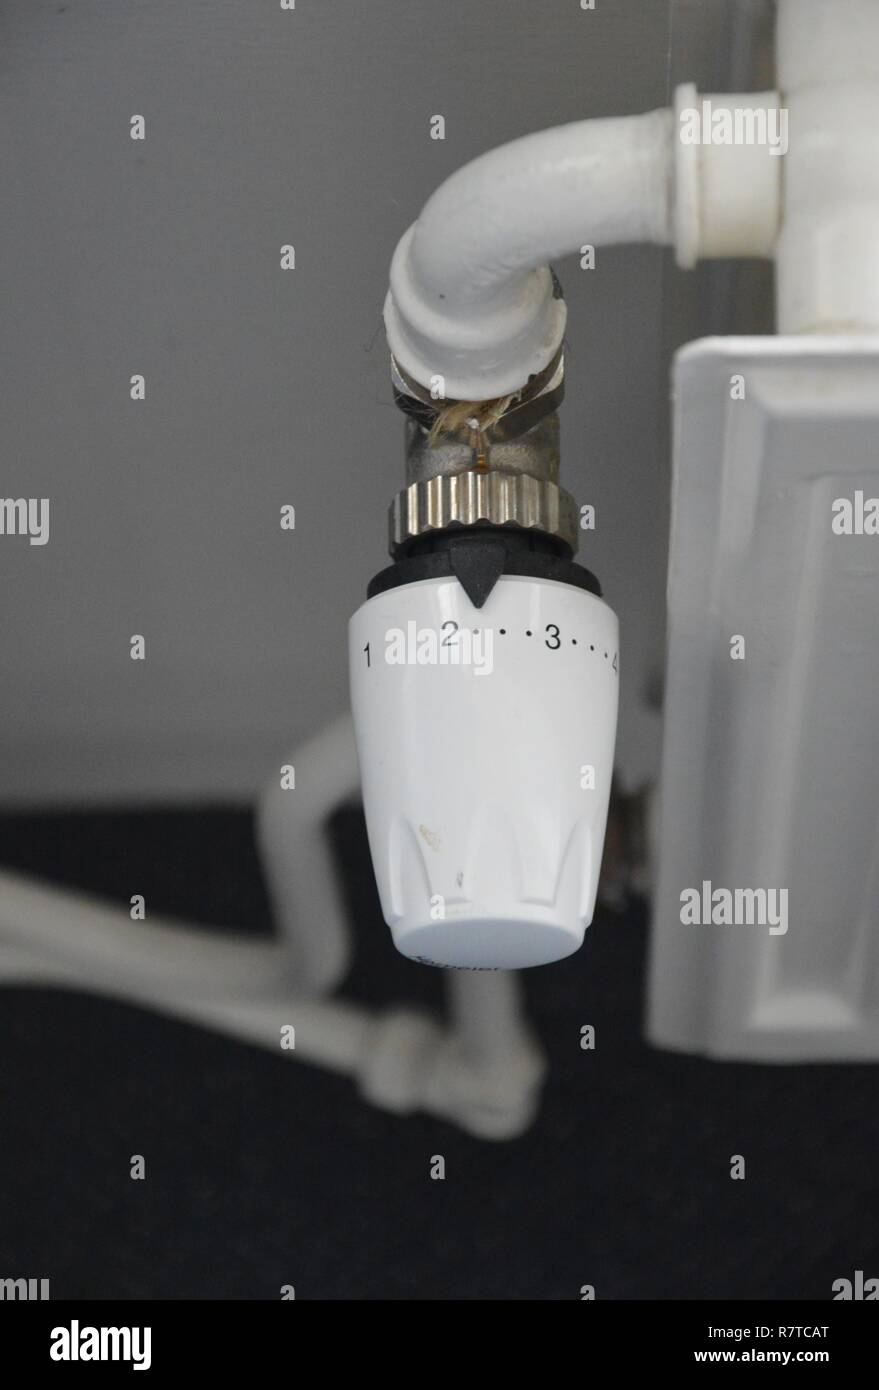 Radiador de válvula termostática fotografías e imágenes de alta resolución  - Página 2 - Alamy